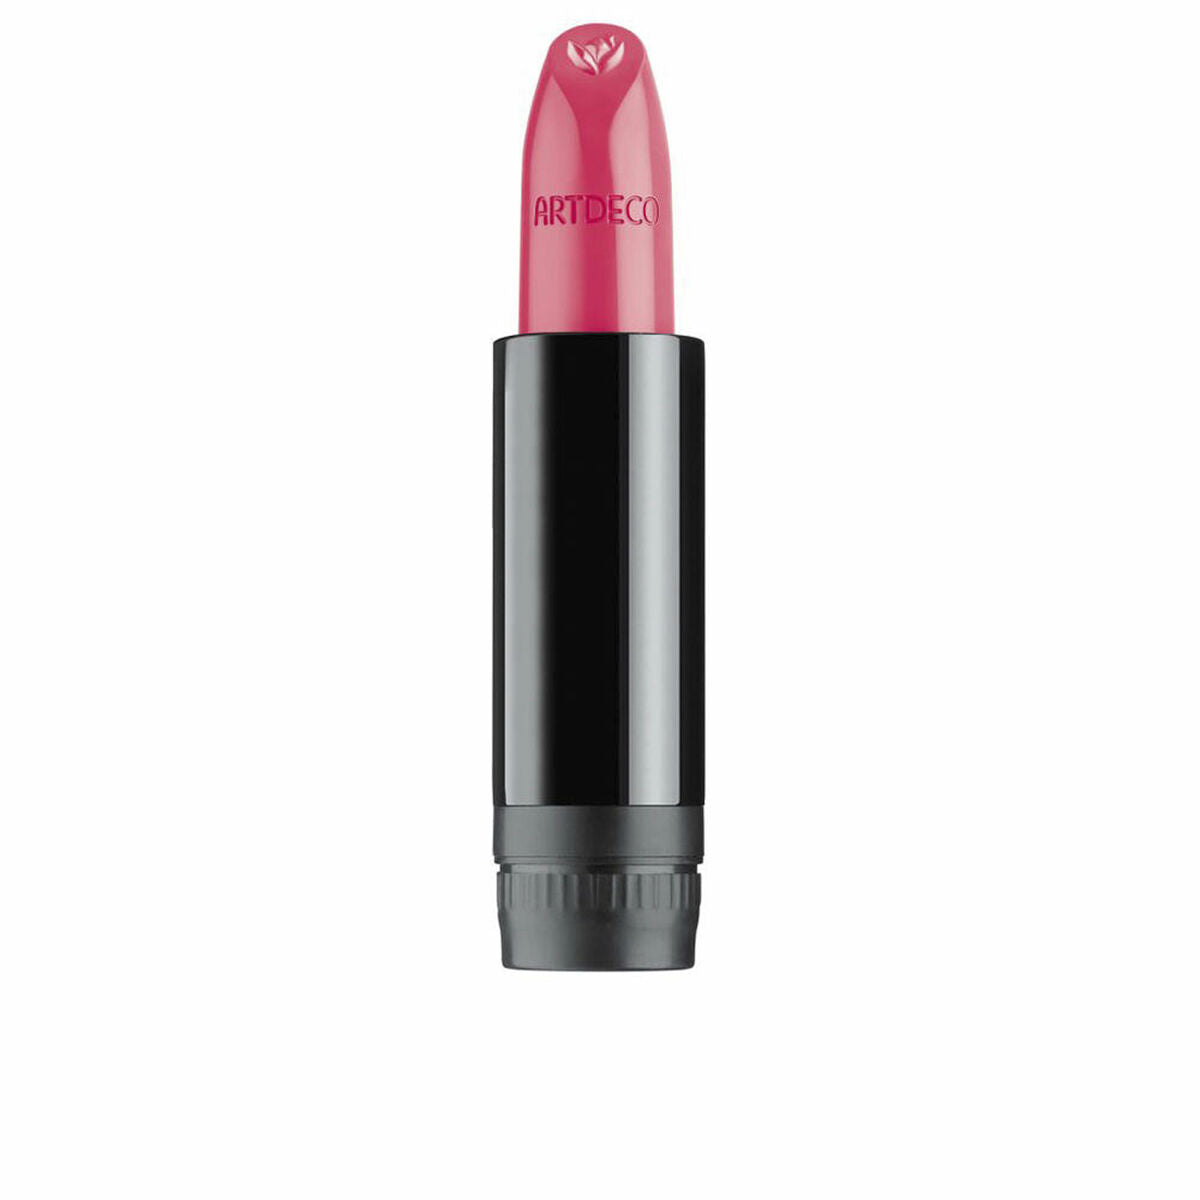 Βάλσαμο για τα χείλη Artdeco Couture Nº 280 ροζ όνειρο 4 g Επαναπλήρωση